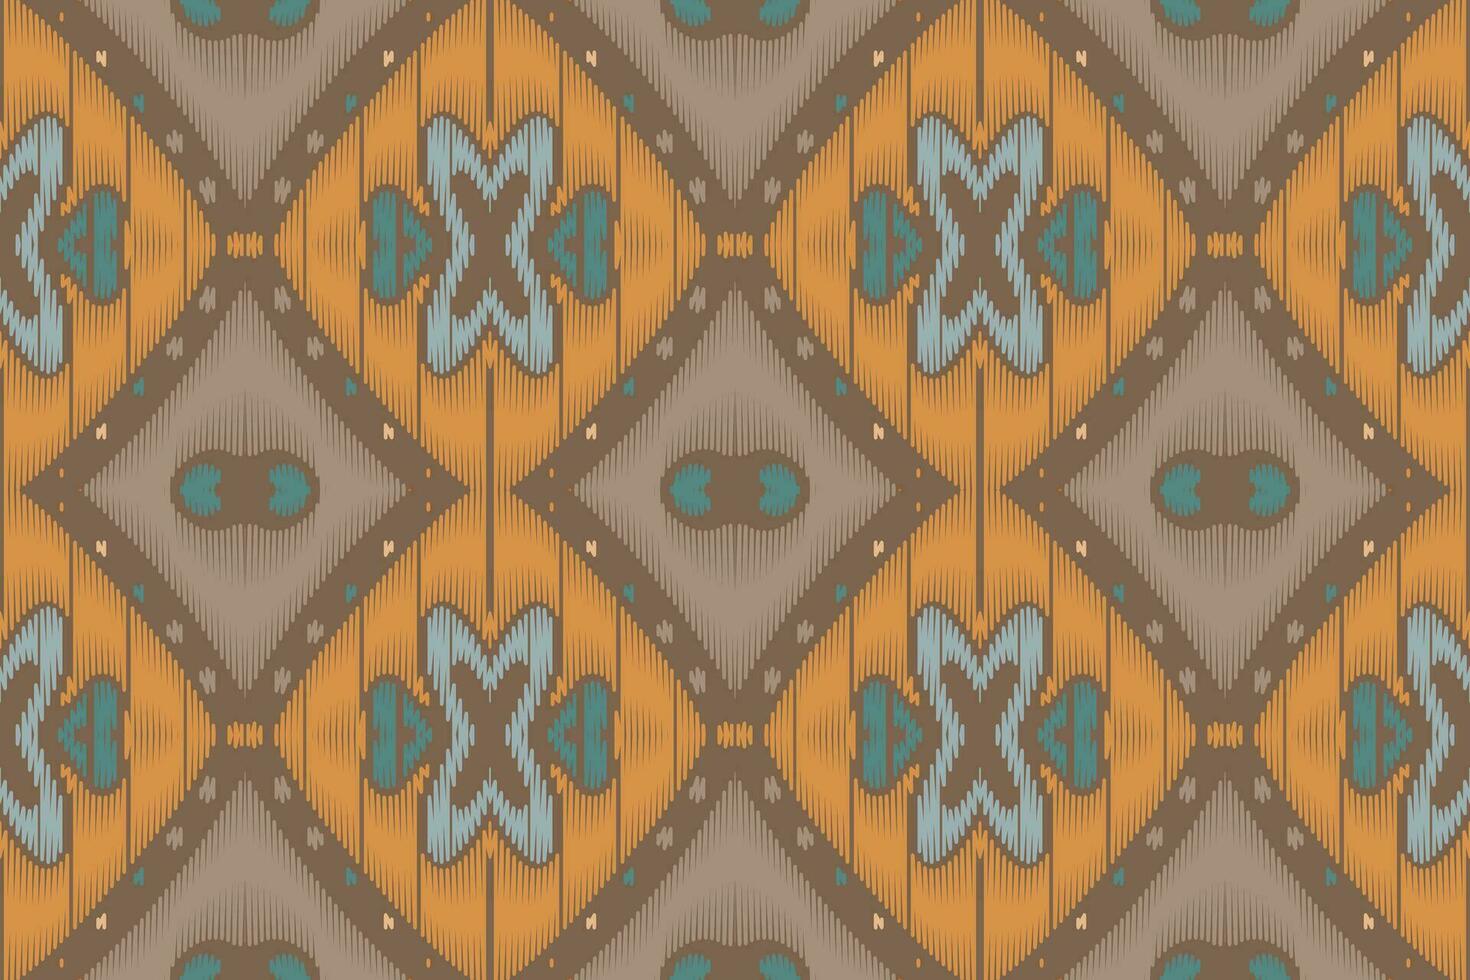 ikat floral paisley bordado em branco background.geometric étnica oriental padrão tradicional. asteca estilo abstrato vector illustration.design para textura, tecido, roupas, embrulho, decoração, sarongue.